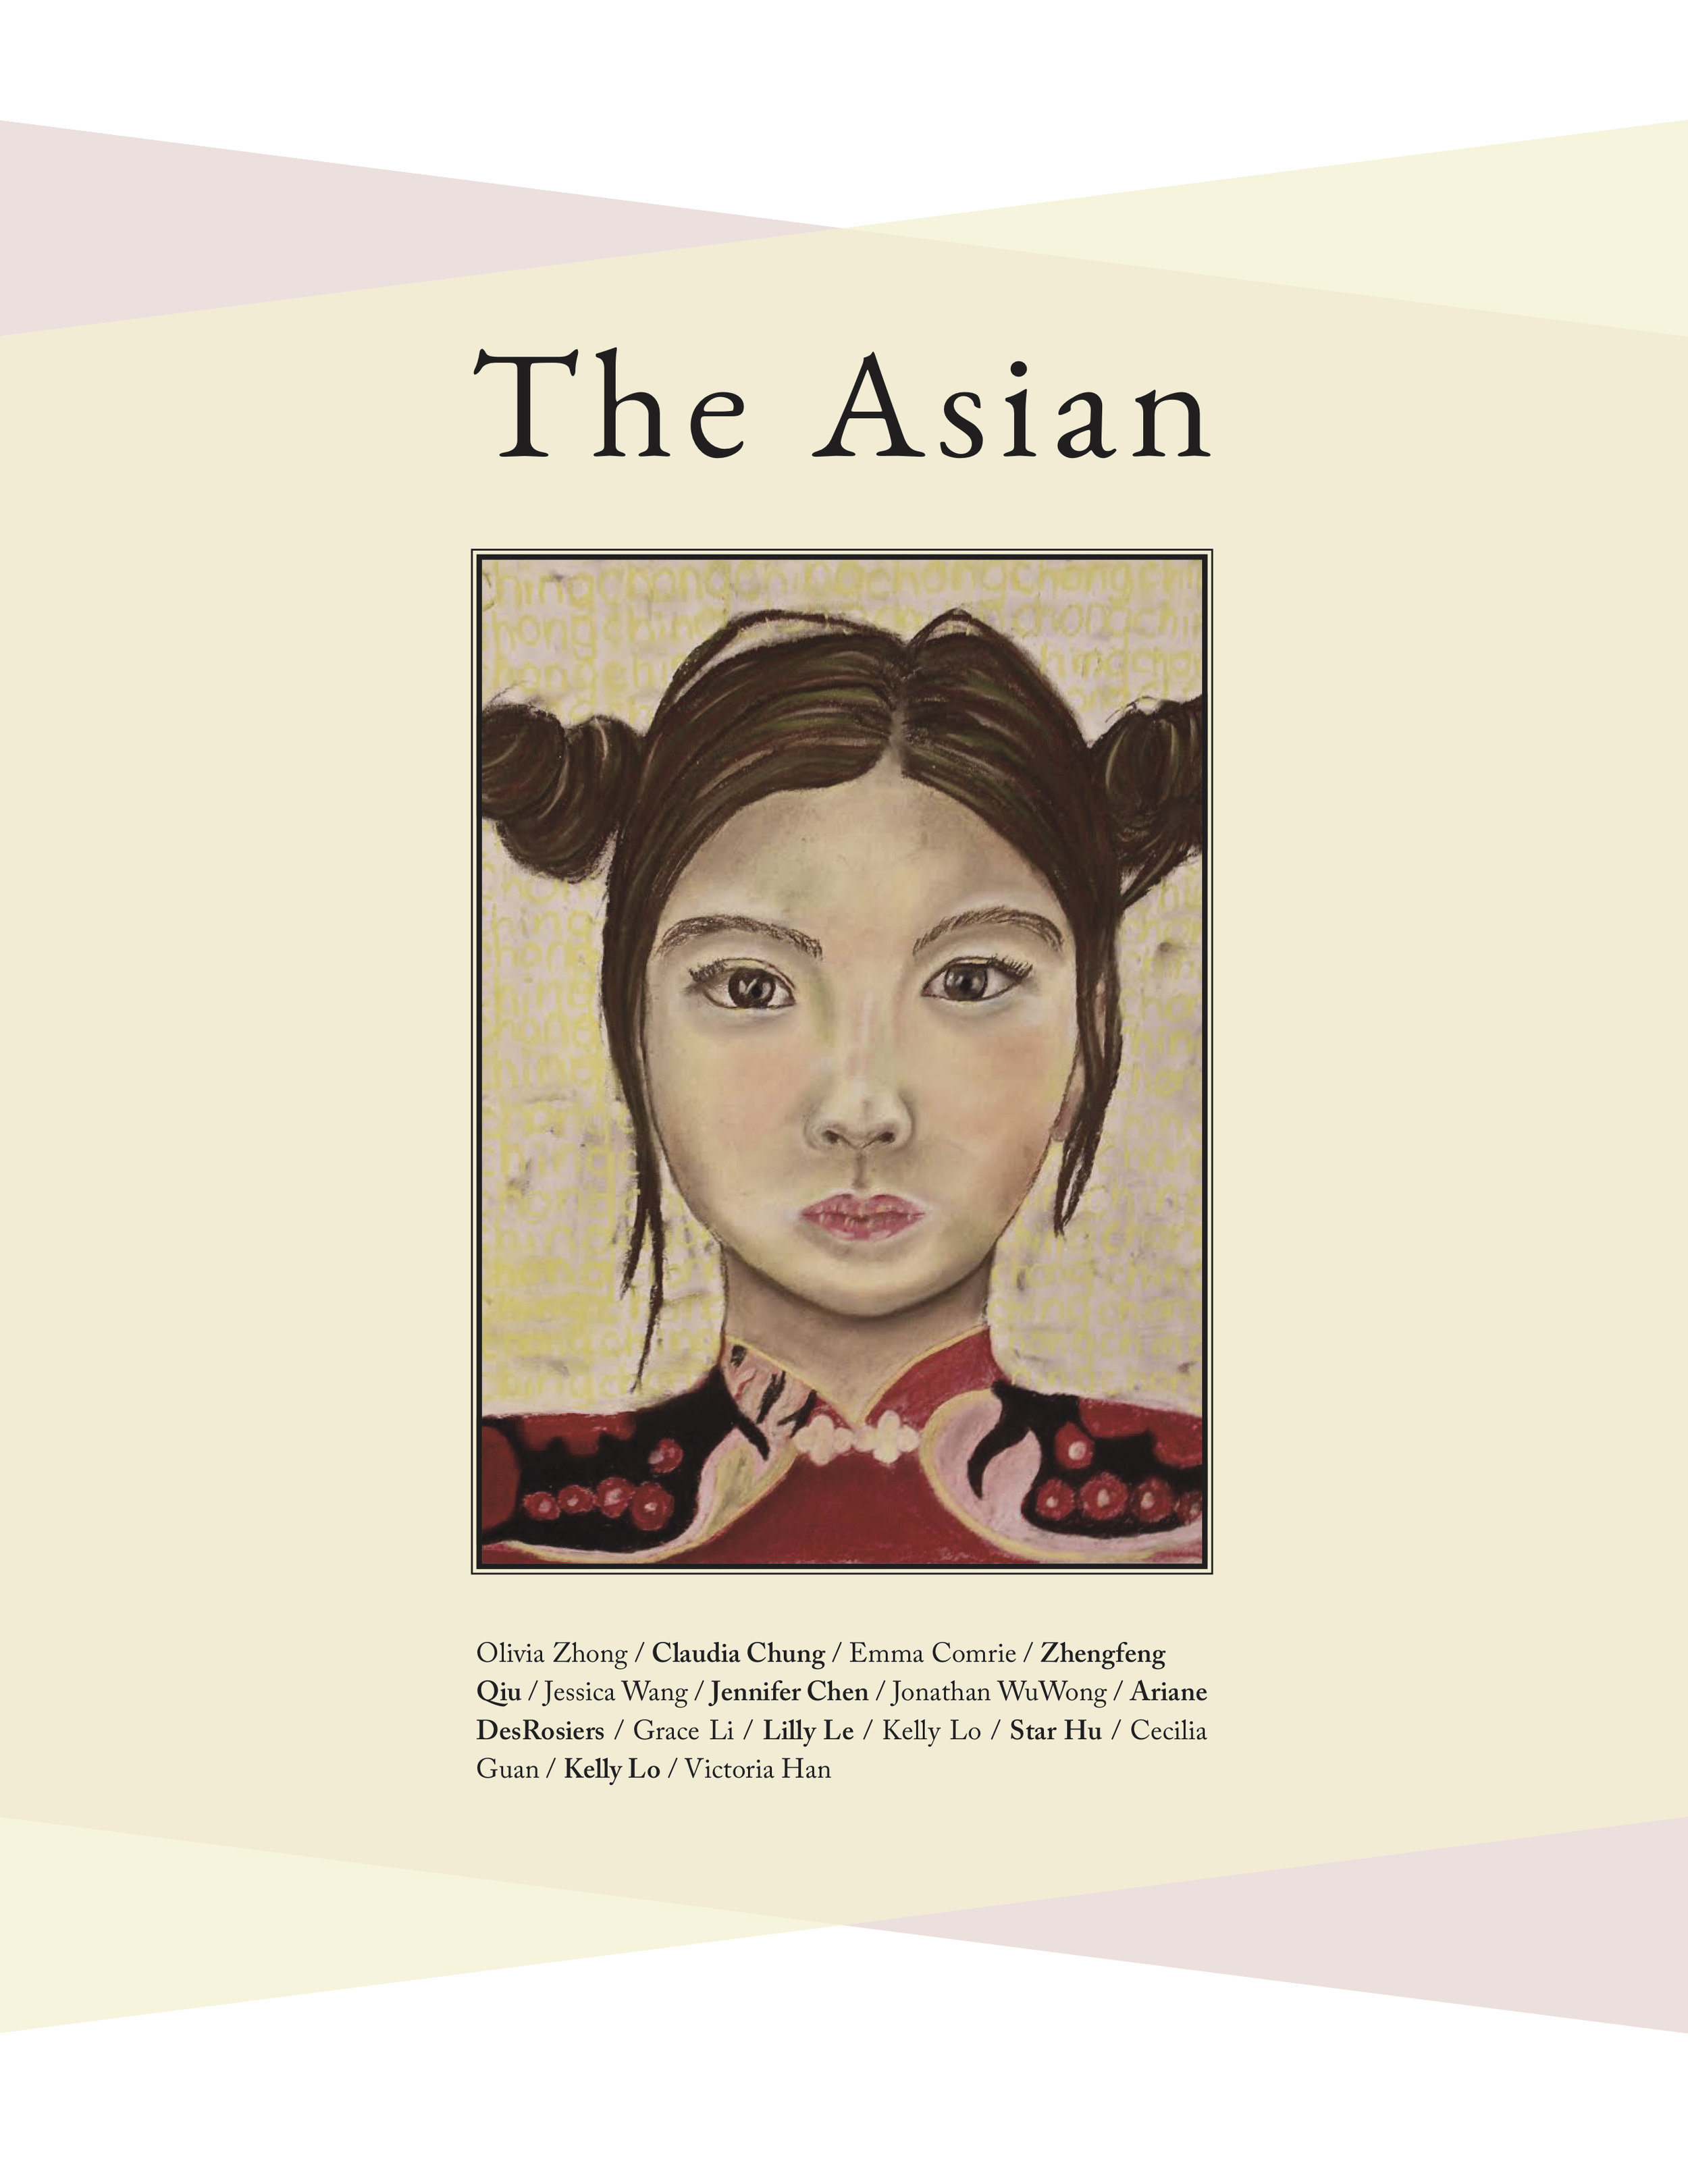 The Asian pt 2.jpg